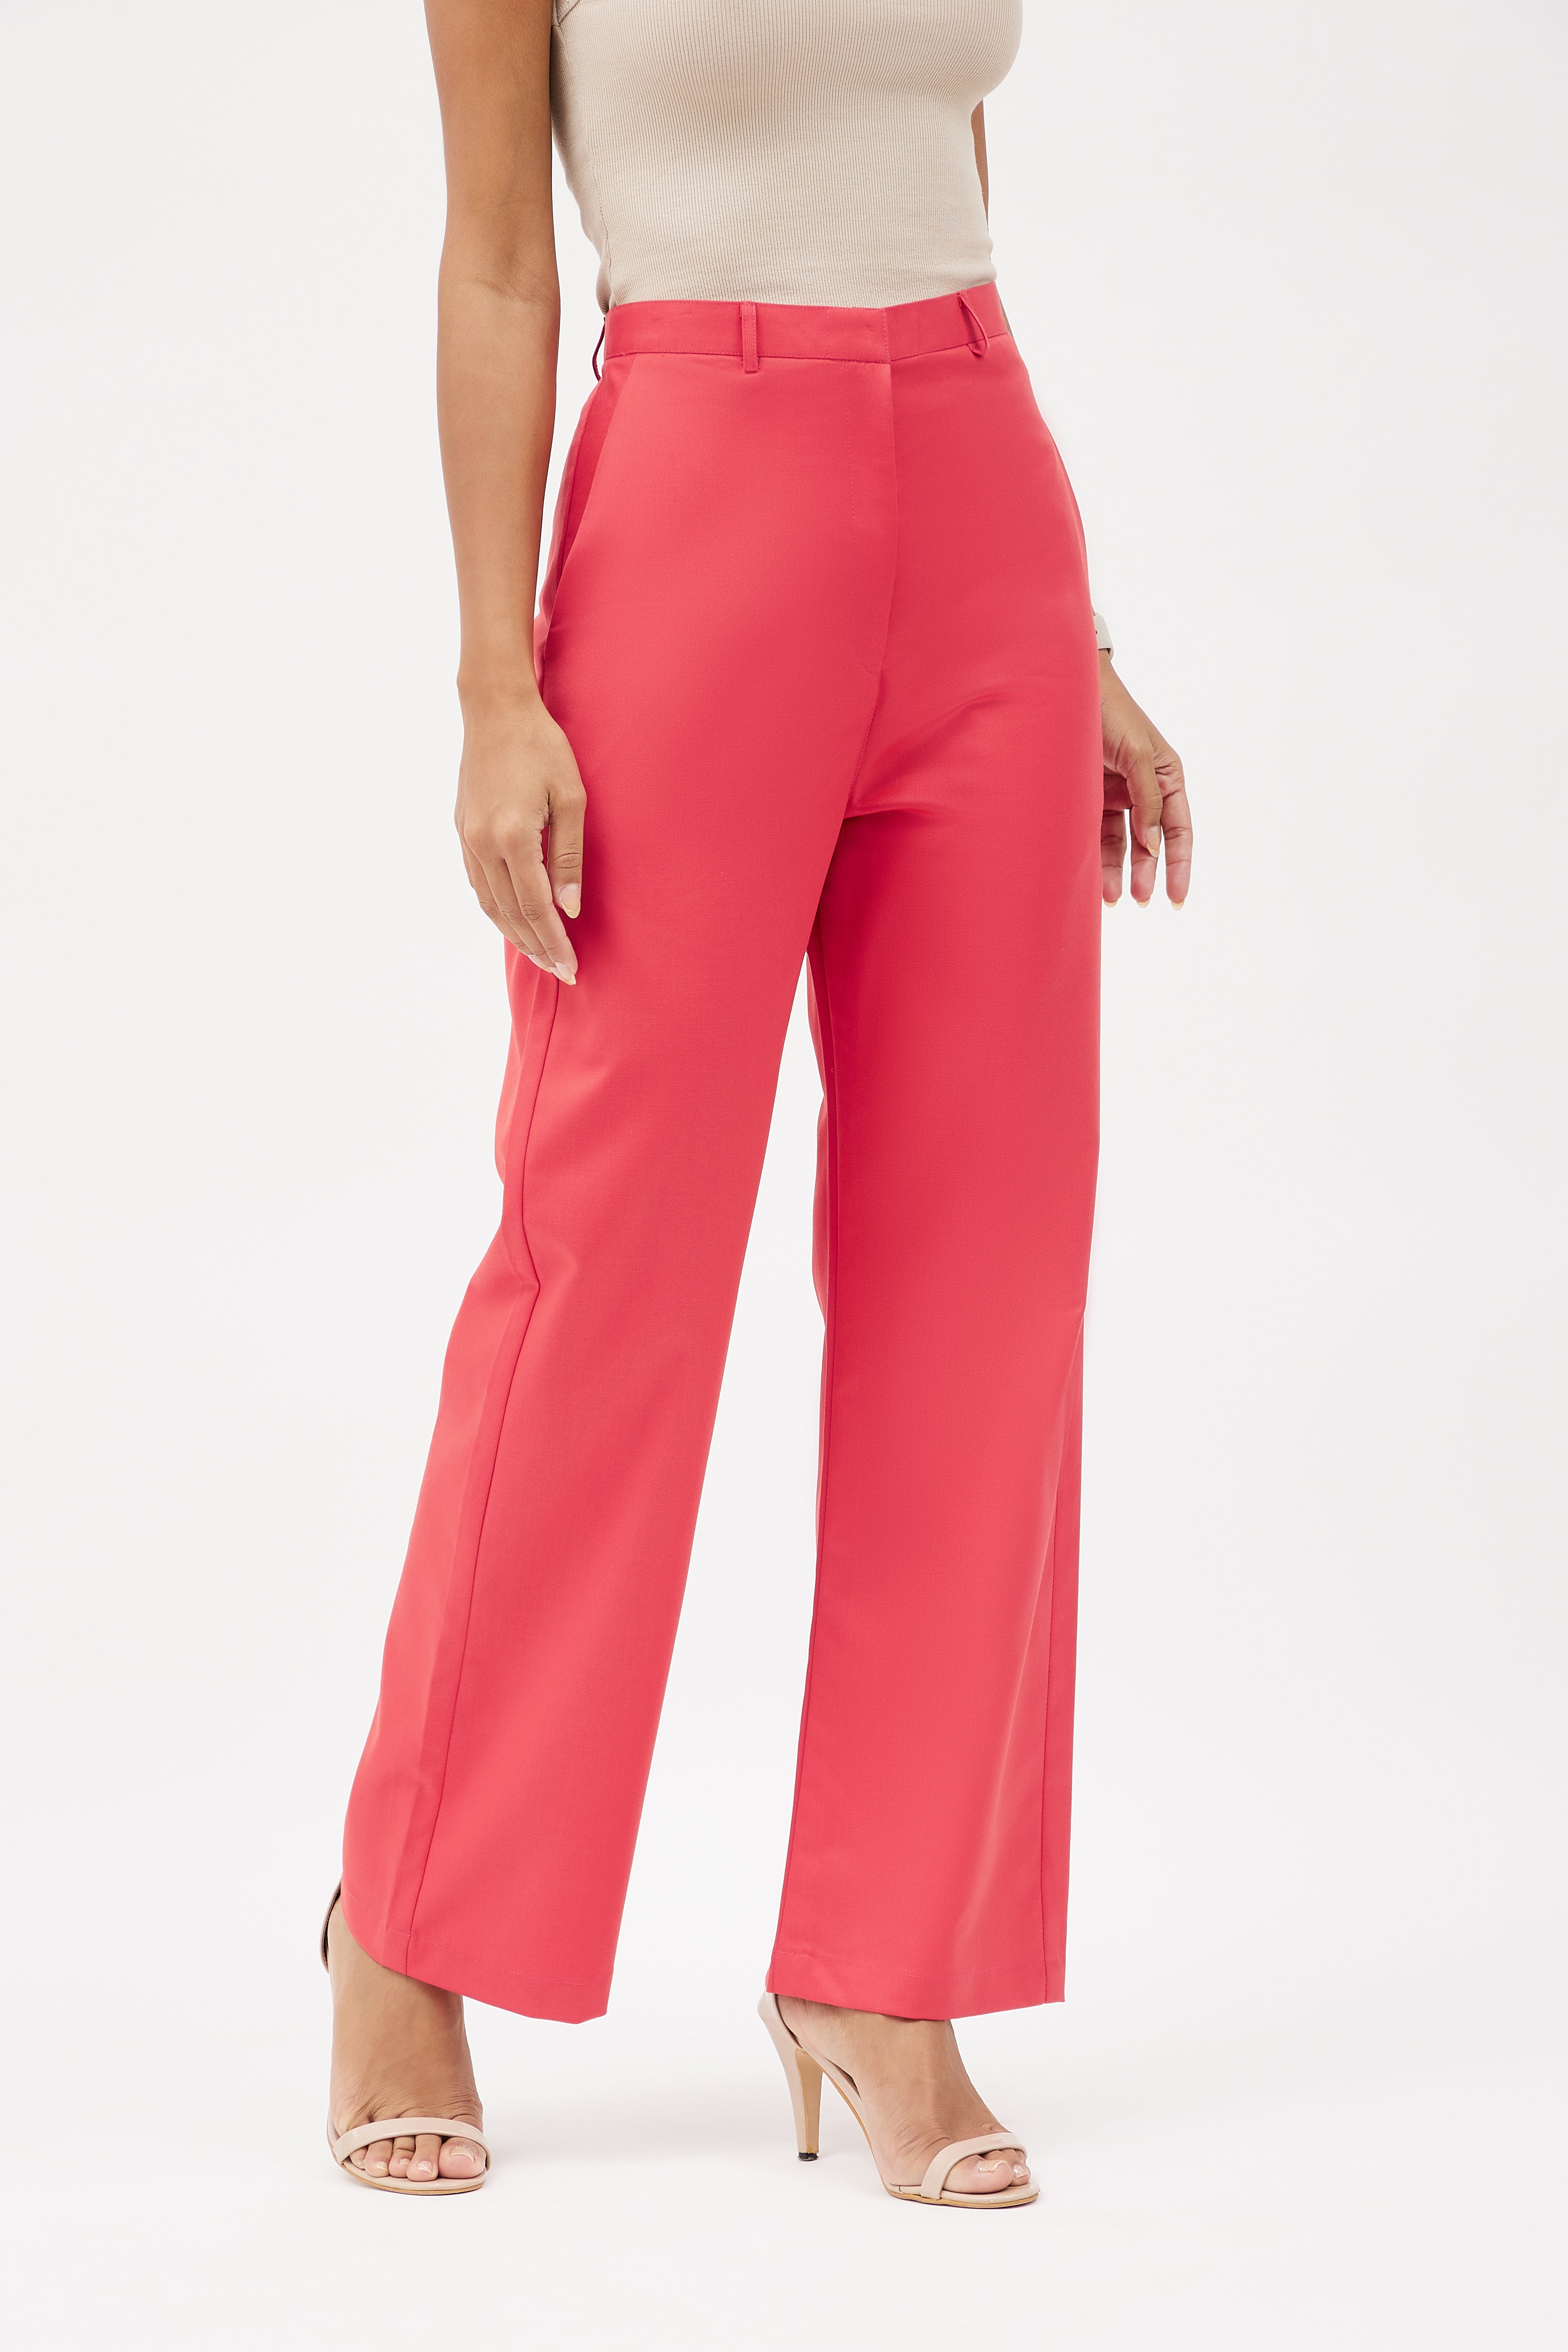 SEZANE Pierre Trousers Blush Coral Pink Pants FR 38 US 6 | Pink pants,  Sezane, Coral pink